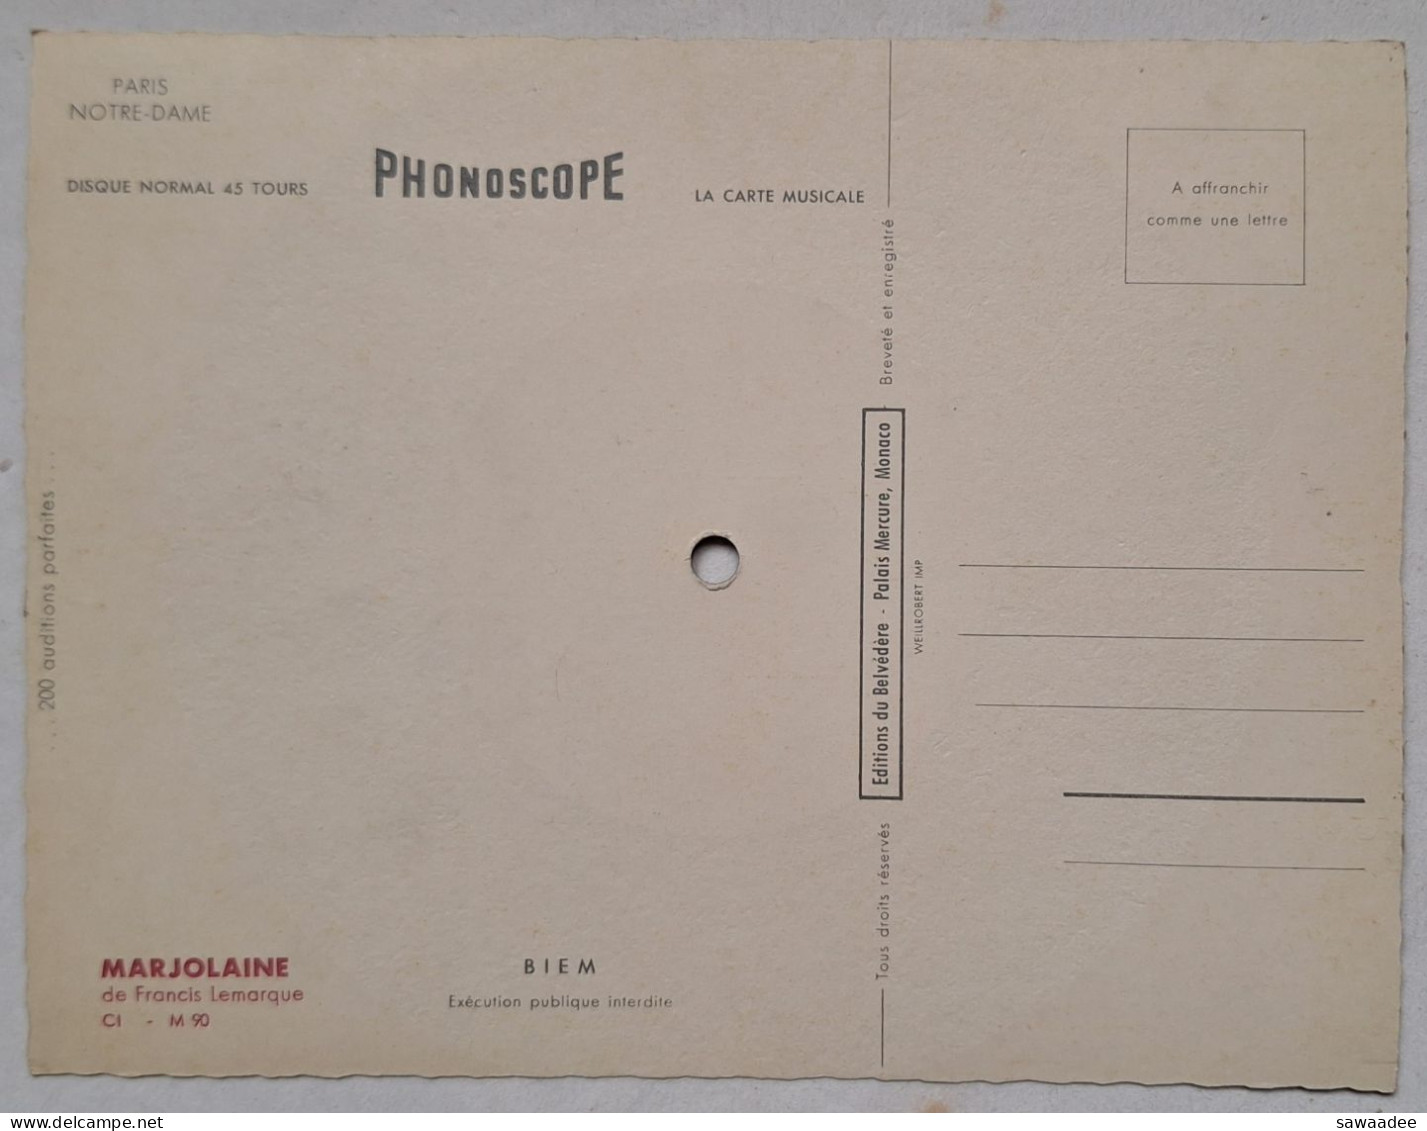 CARTE POSTALE DISQUE - PHONOSCOPE - 45T - ED. BELVEDERE - F. LEMARQUE - MARJOLAINE - CATHEDRALE N.D. DE PARIS - Special Formats